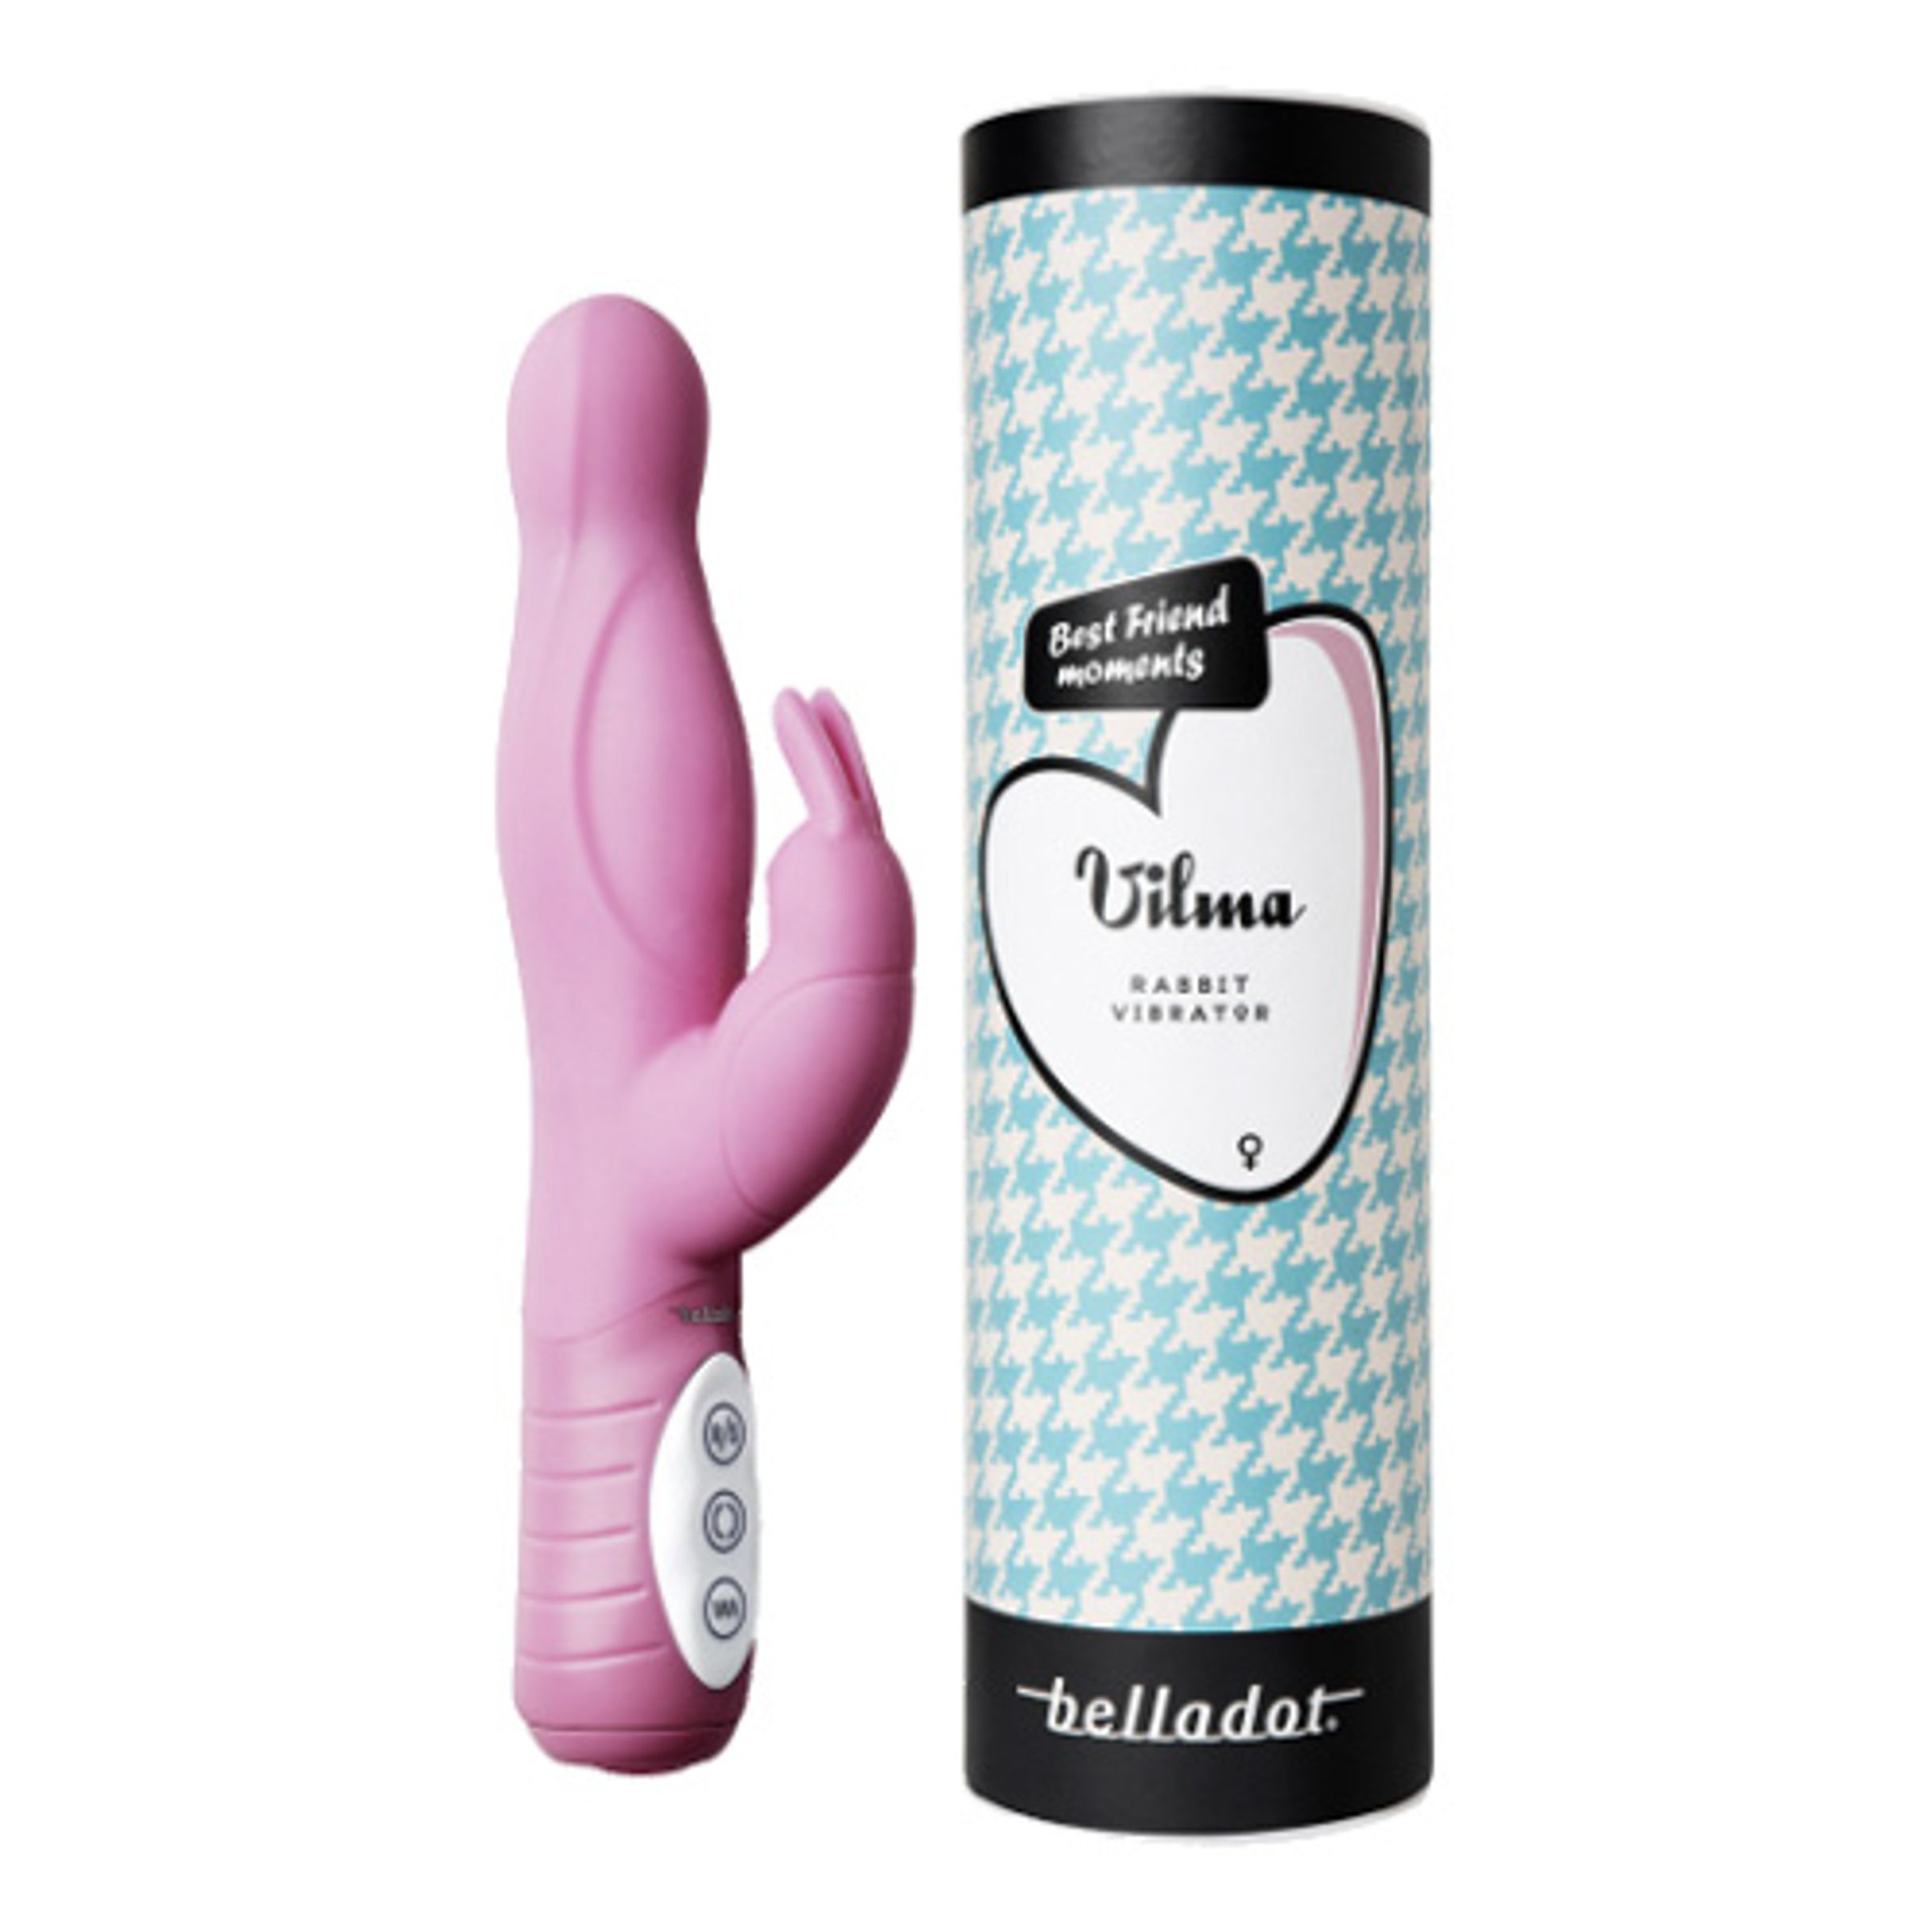 Läs mer om Belladot Vibrator Vilma